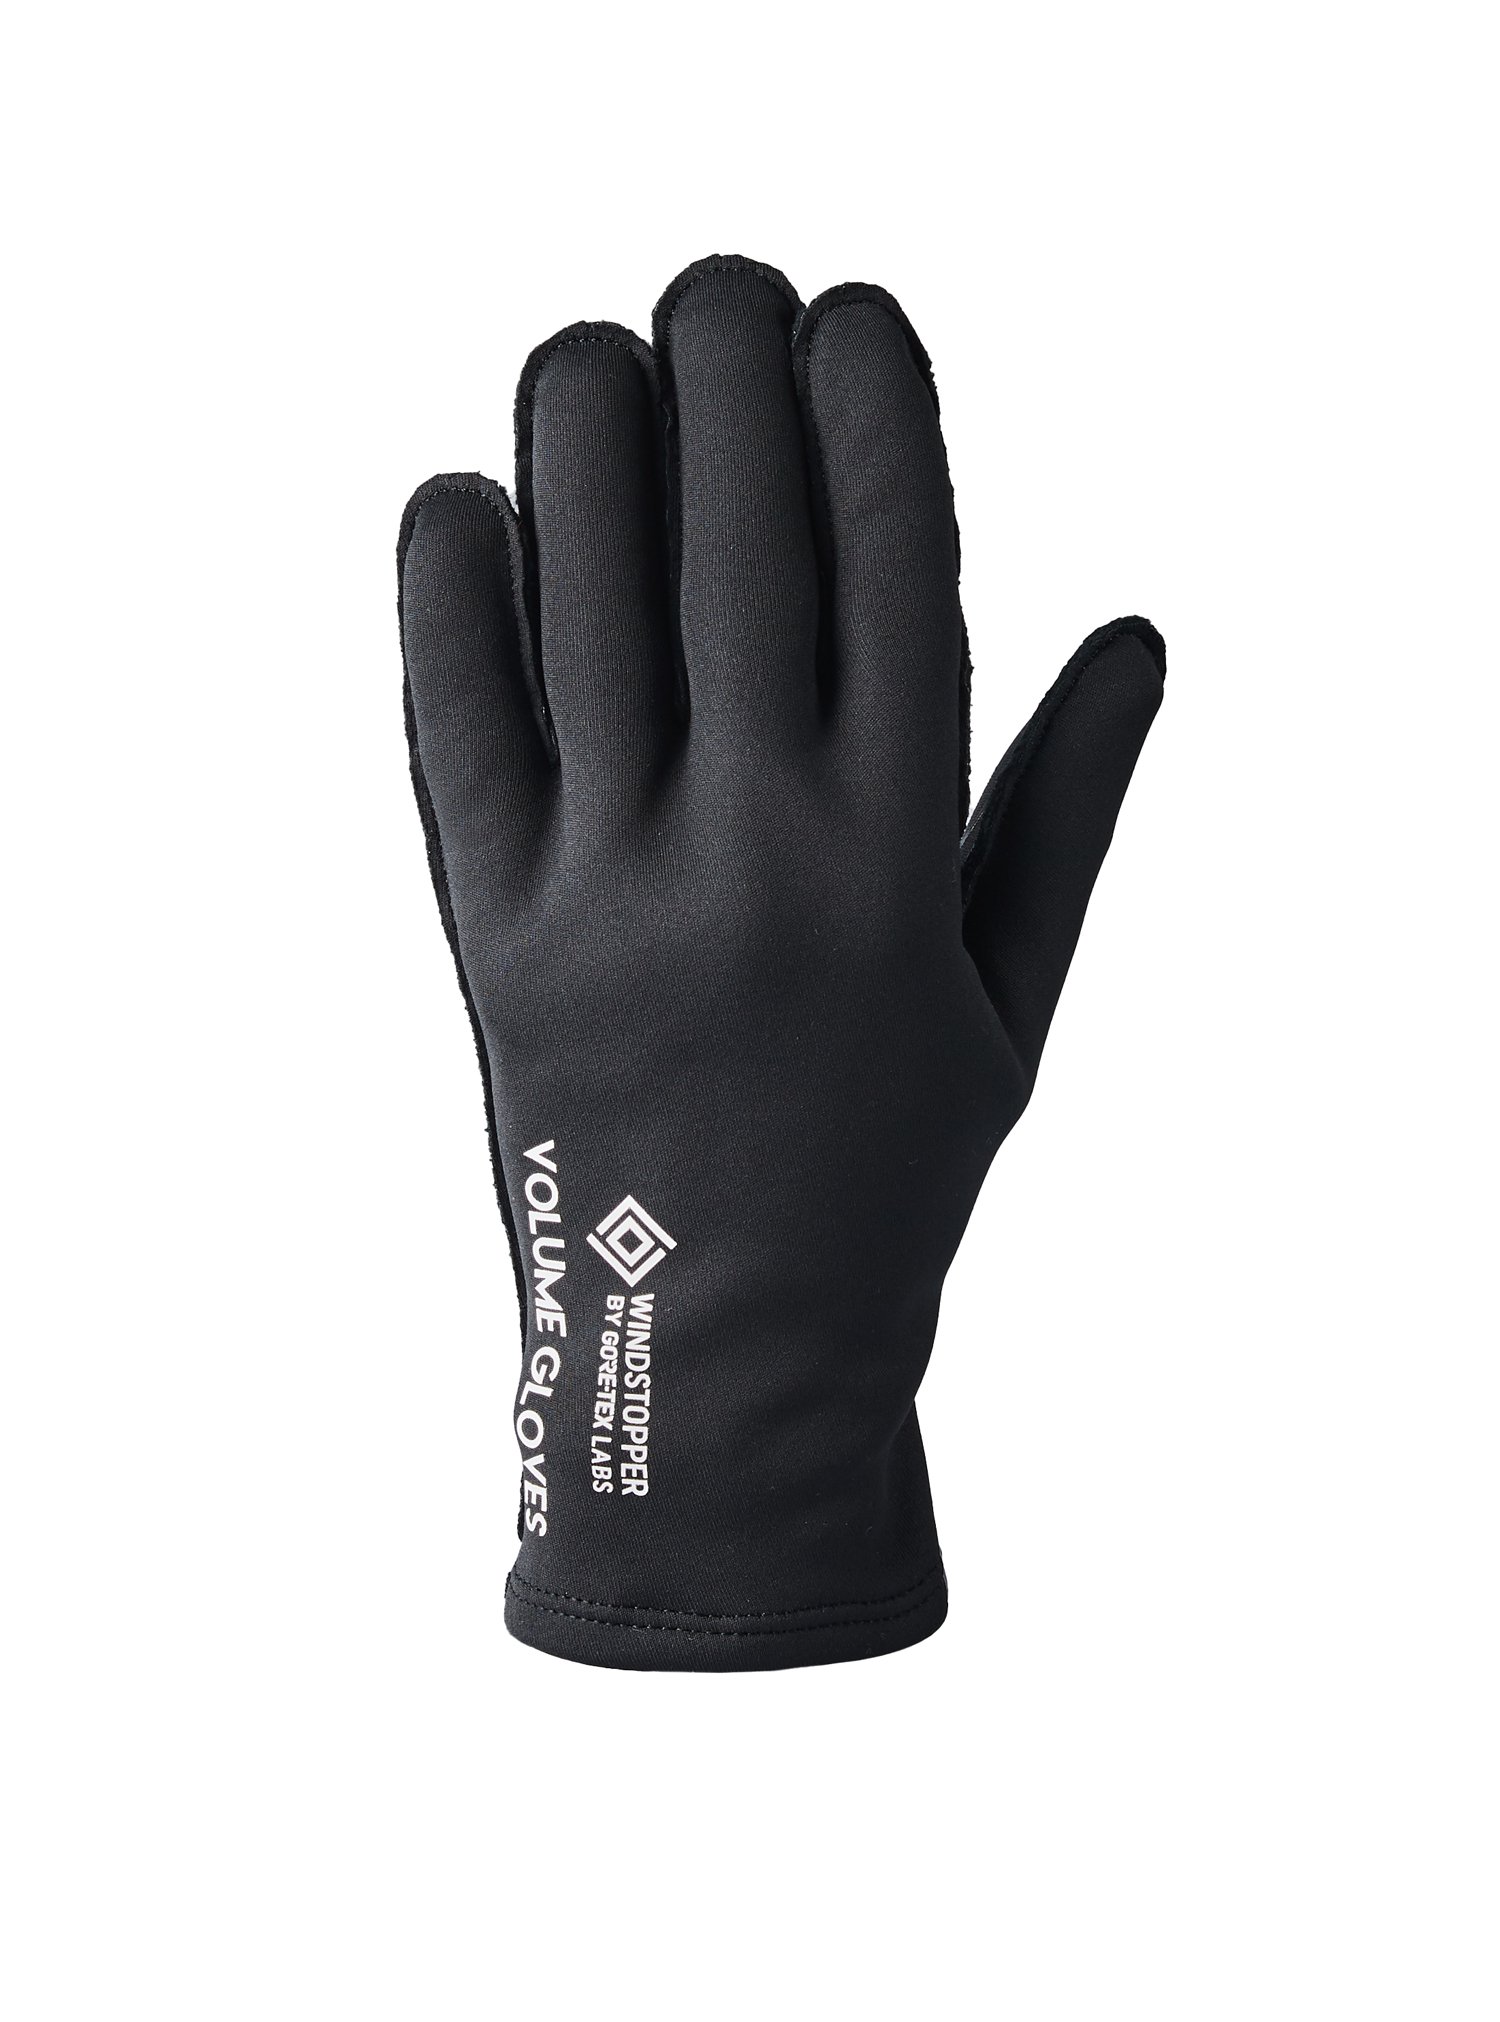 WINDSTOPPER Gloves